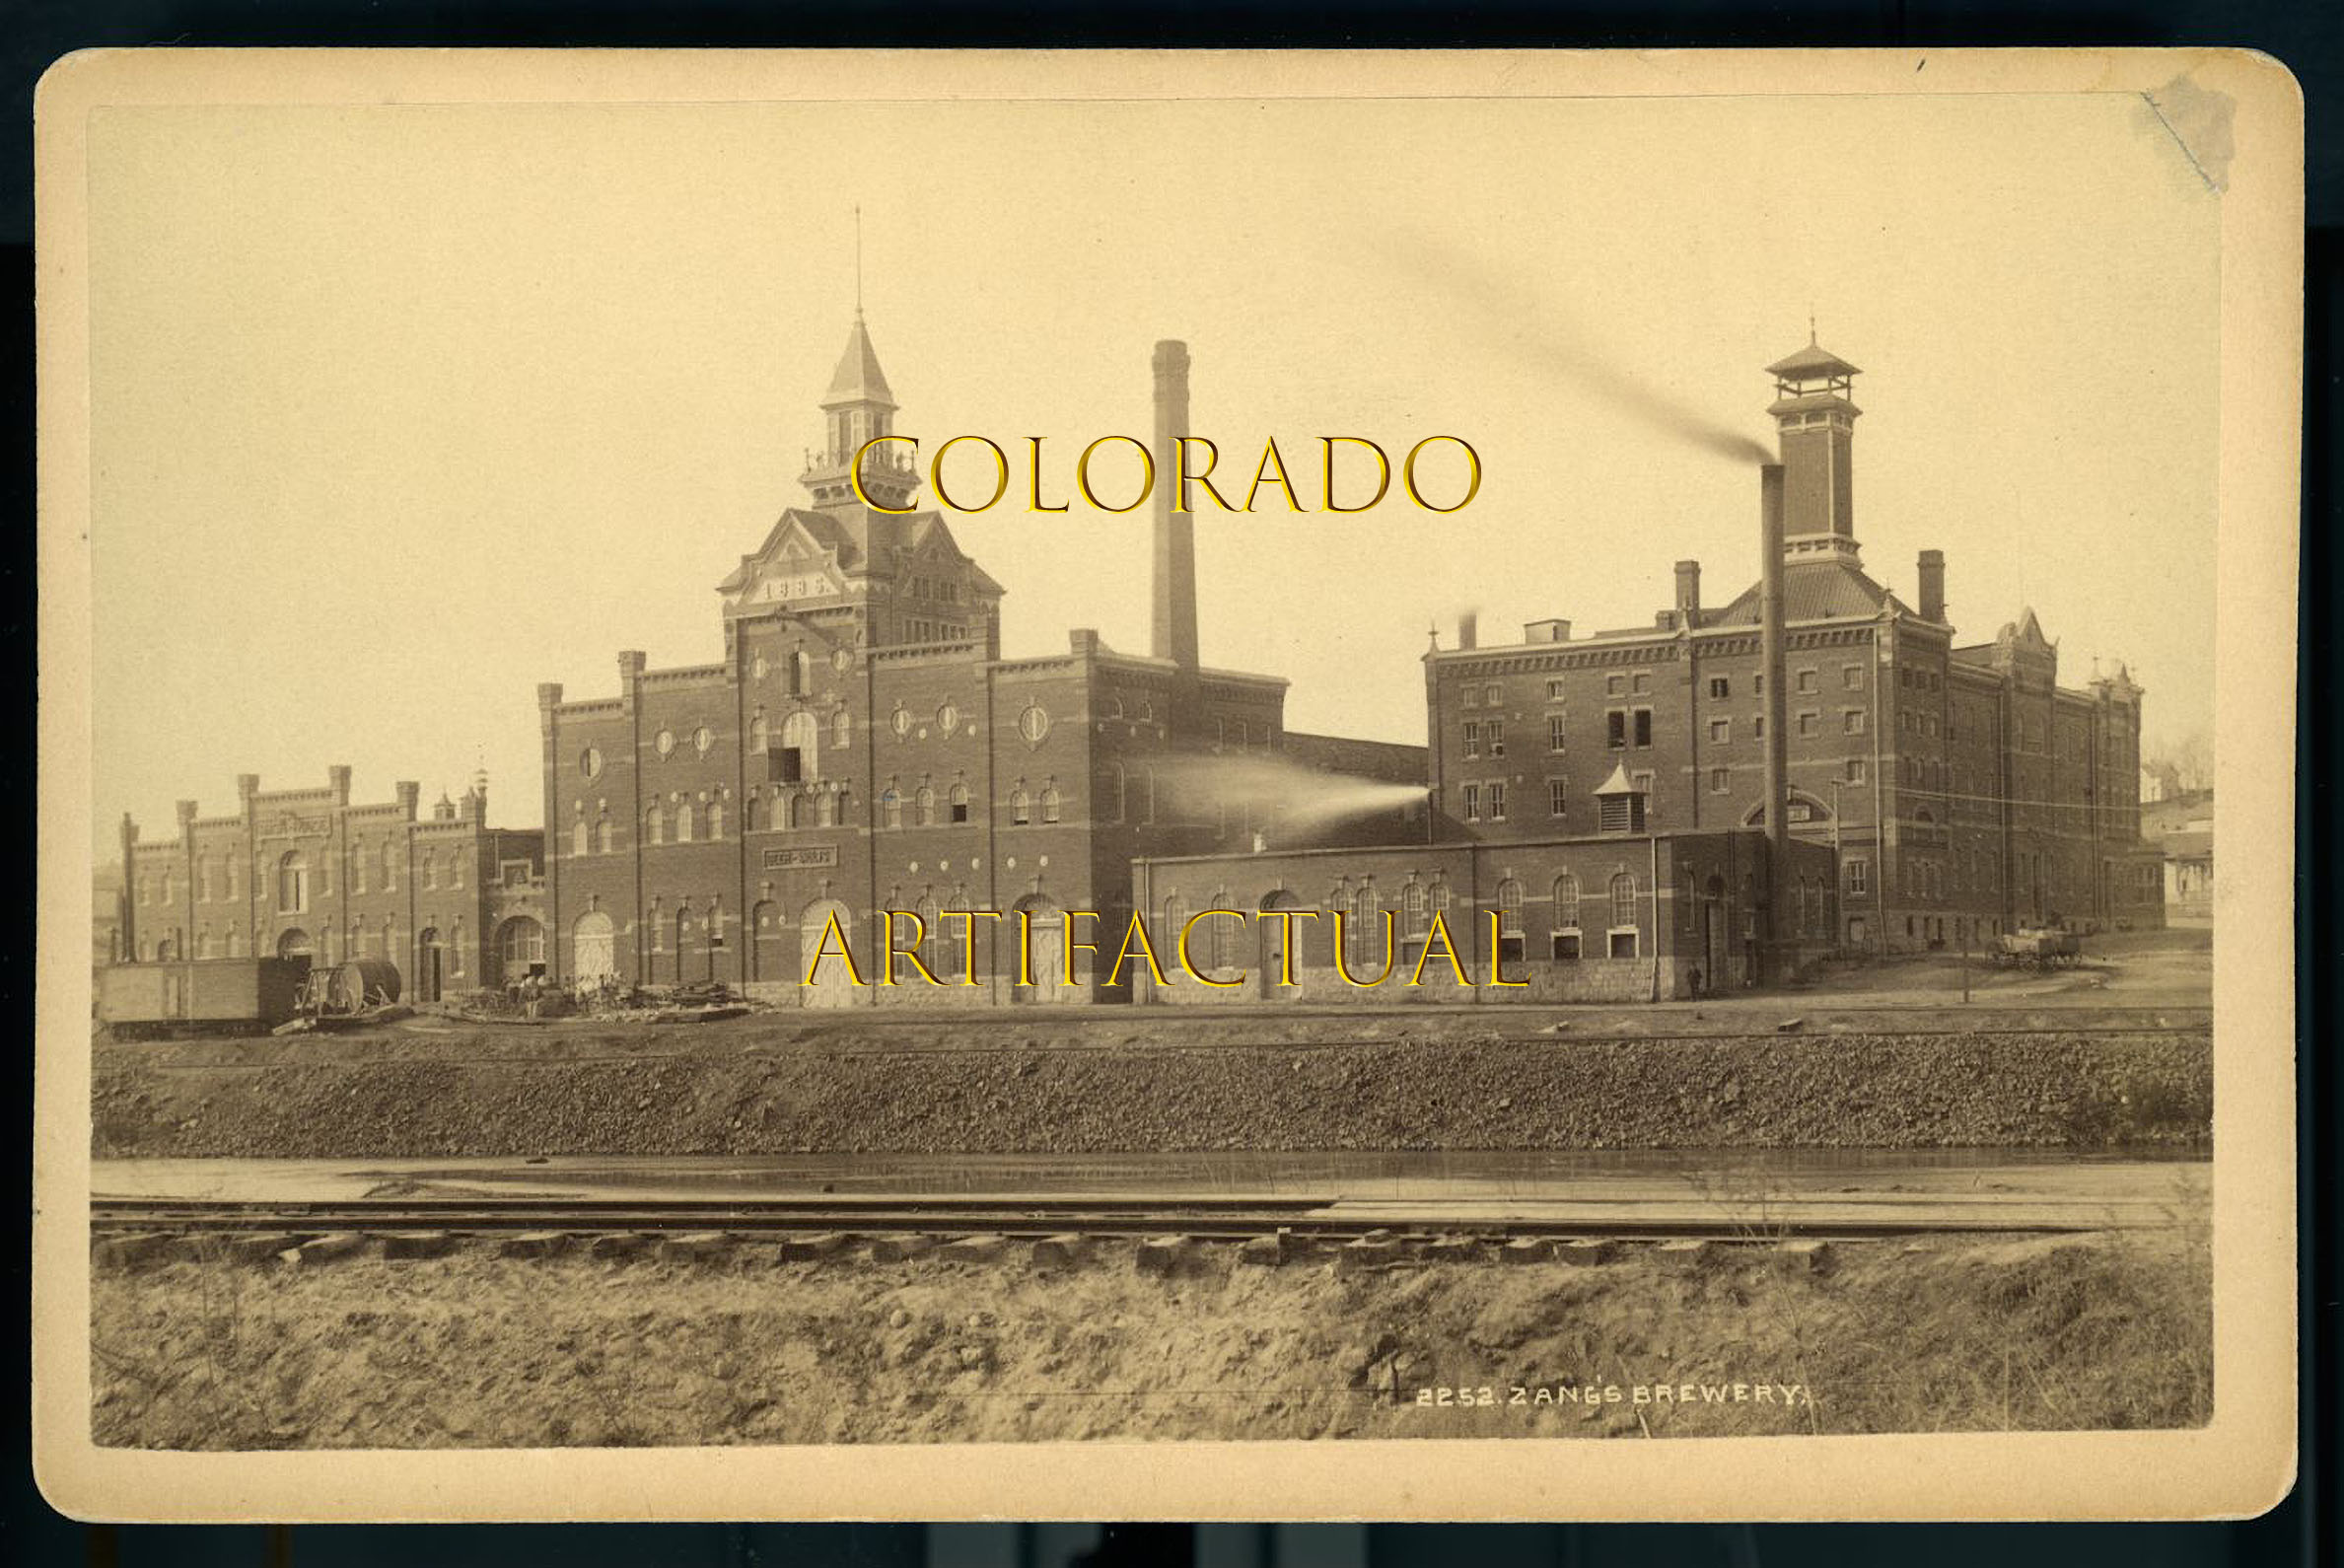 ZANG’S BREWERY DENVER COLORADO original cabinet card photograph WILLIAM HENRY JACKSON 1895